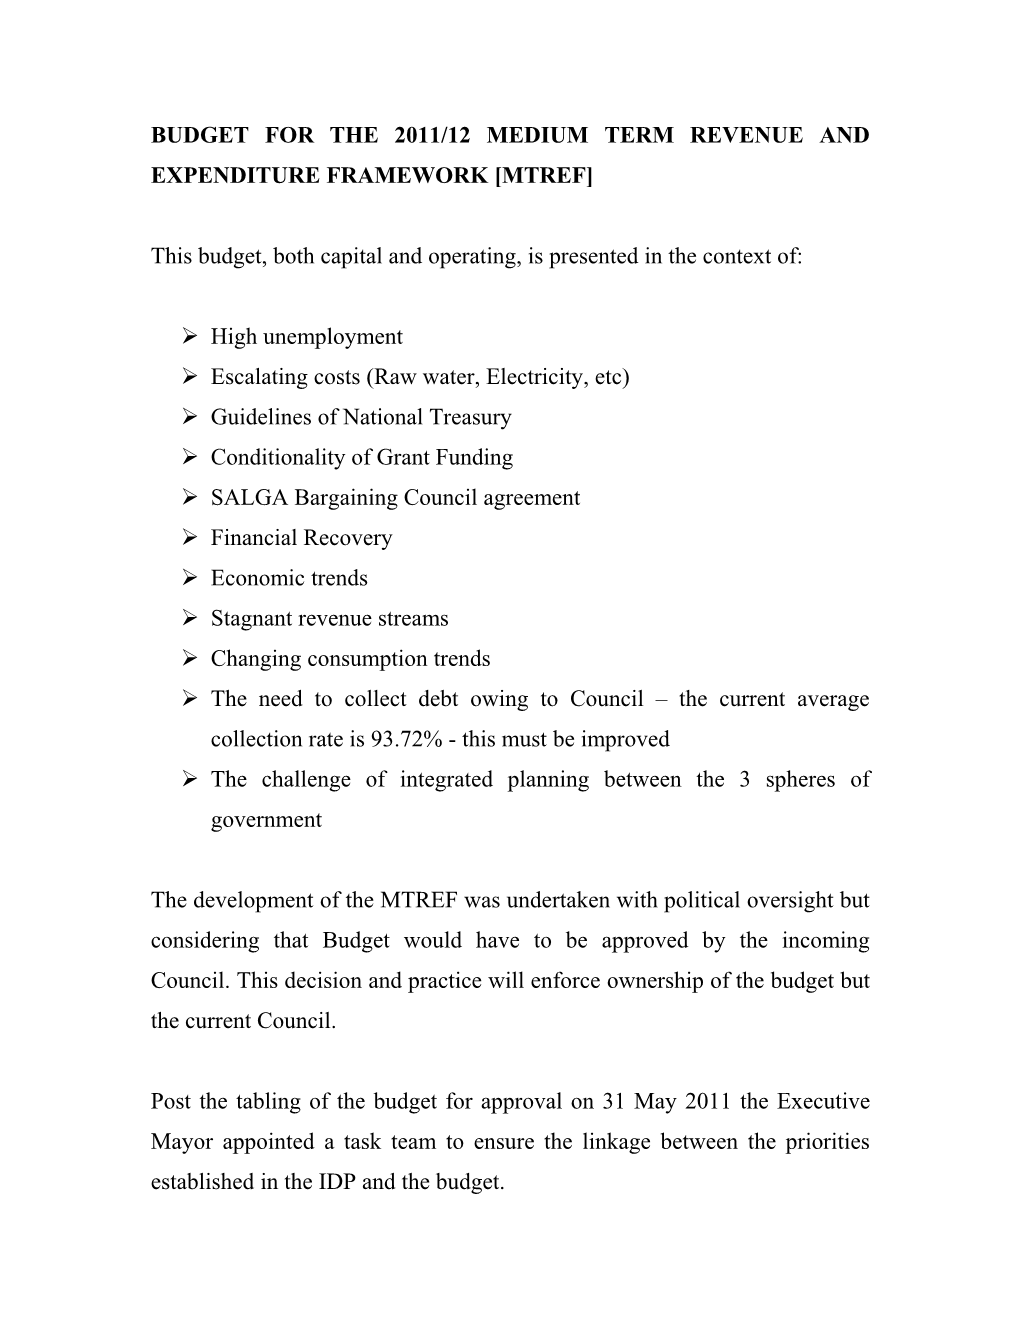 Budget for the 2011/12 Medium Term Revenue and Expenditure Framework Mtref